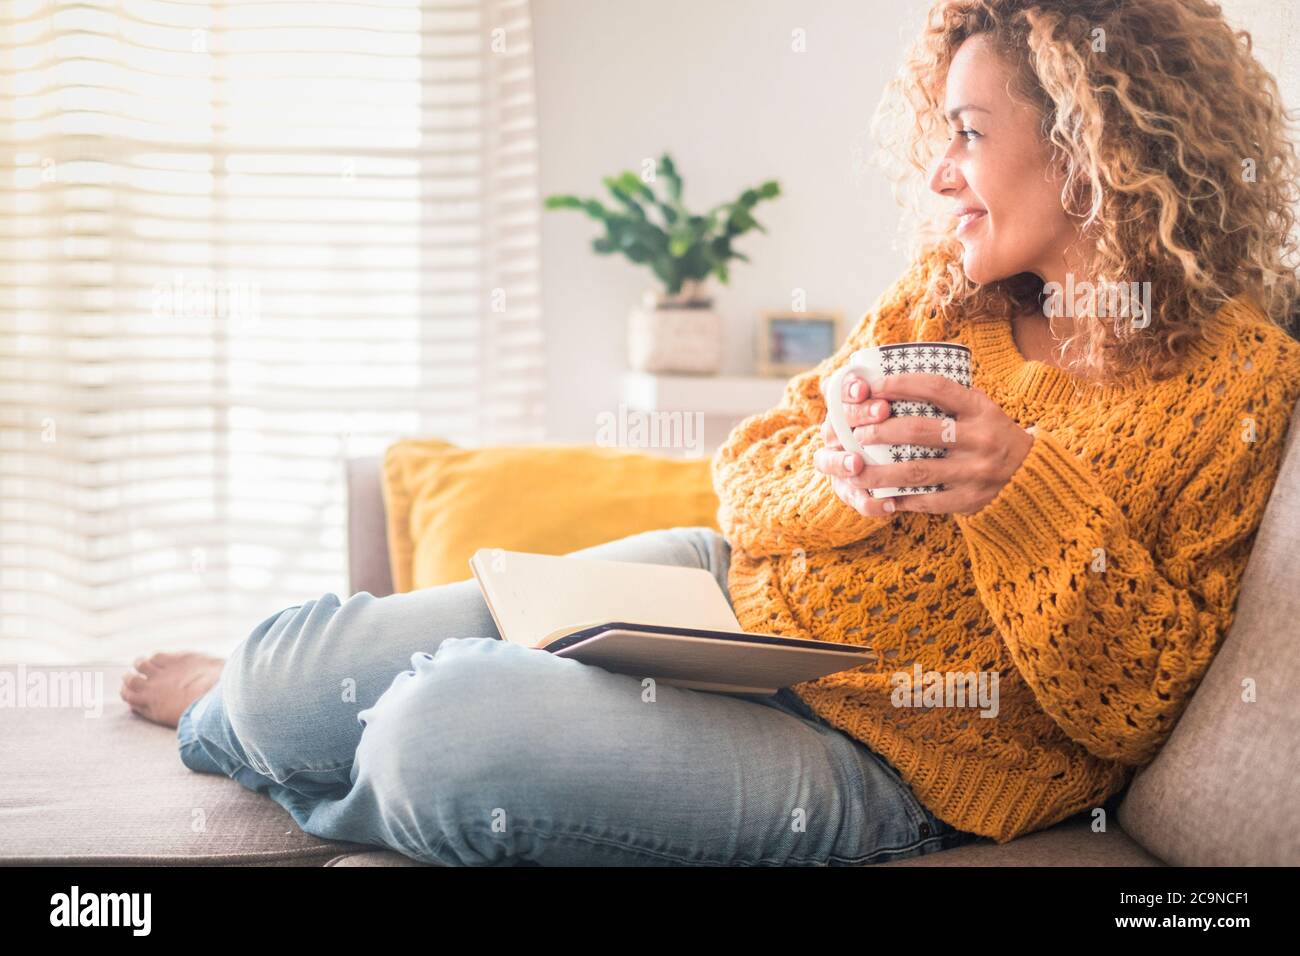 La mujer se ha relajado en casa con una taza de té y un libro - actividad de lectura para adultos hermosa gente femenina - disfrutando de un estilo de vida tranquilo en el interior y el blón largo Foto de stock